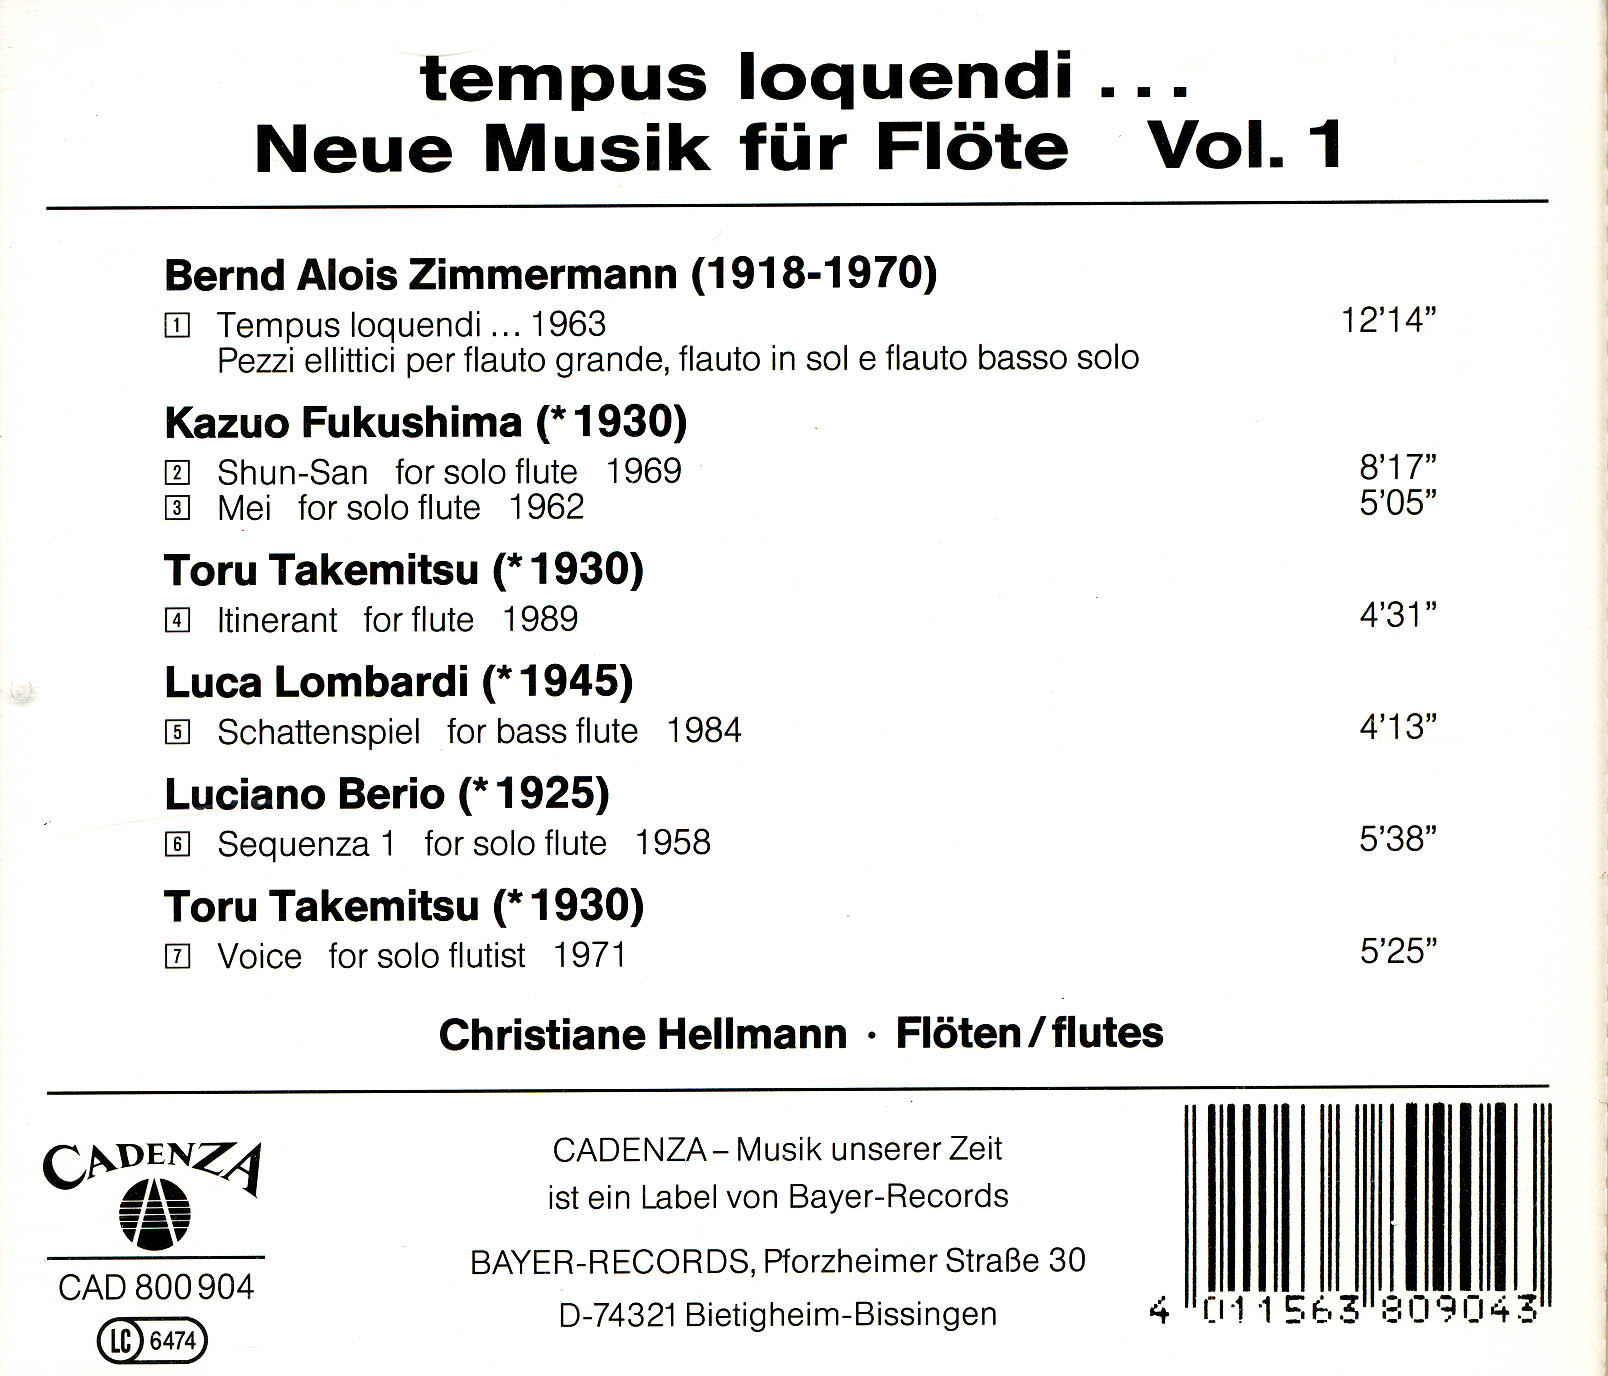 Tempus loquendi - Neue Musik für FlöteVol.1